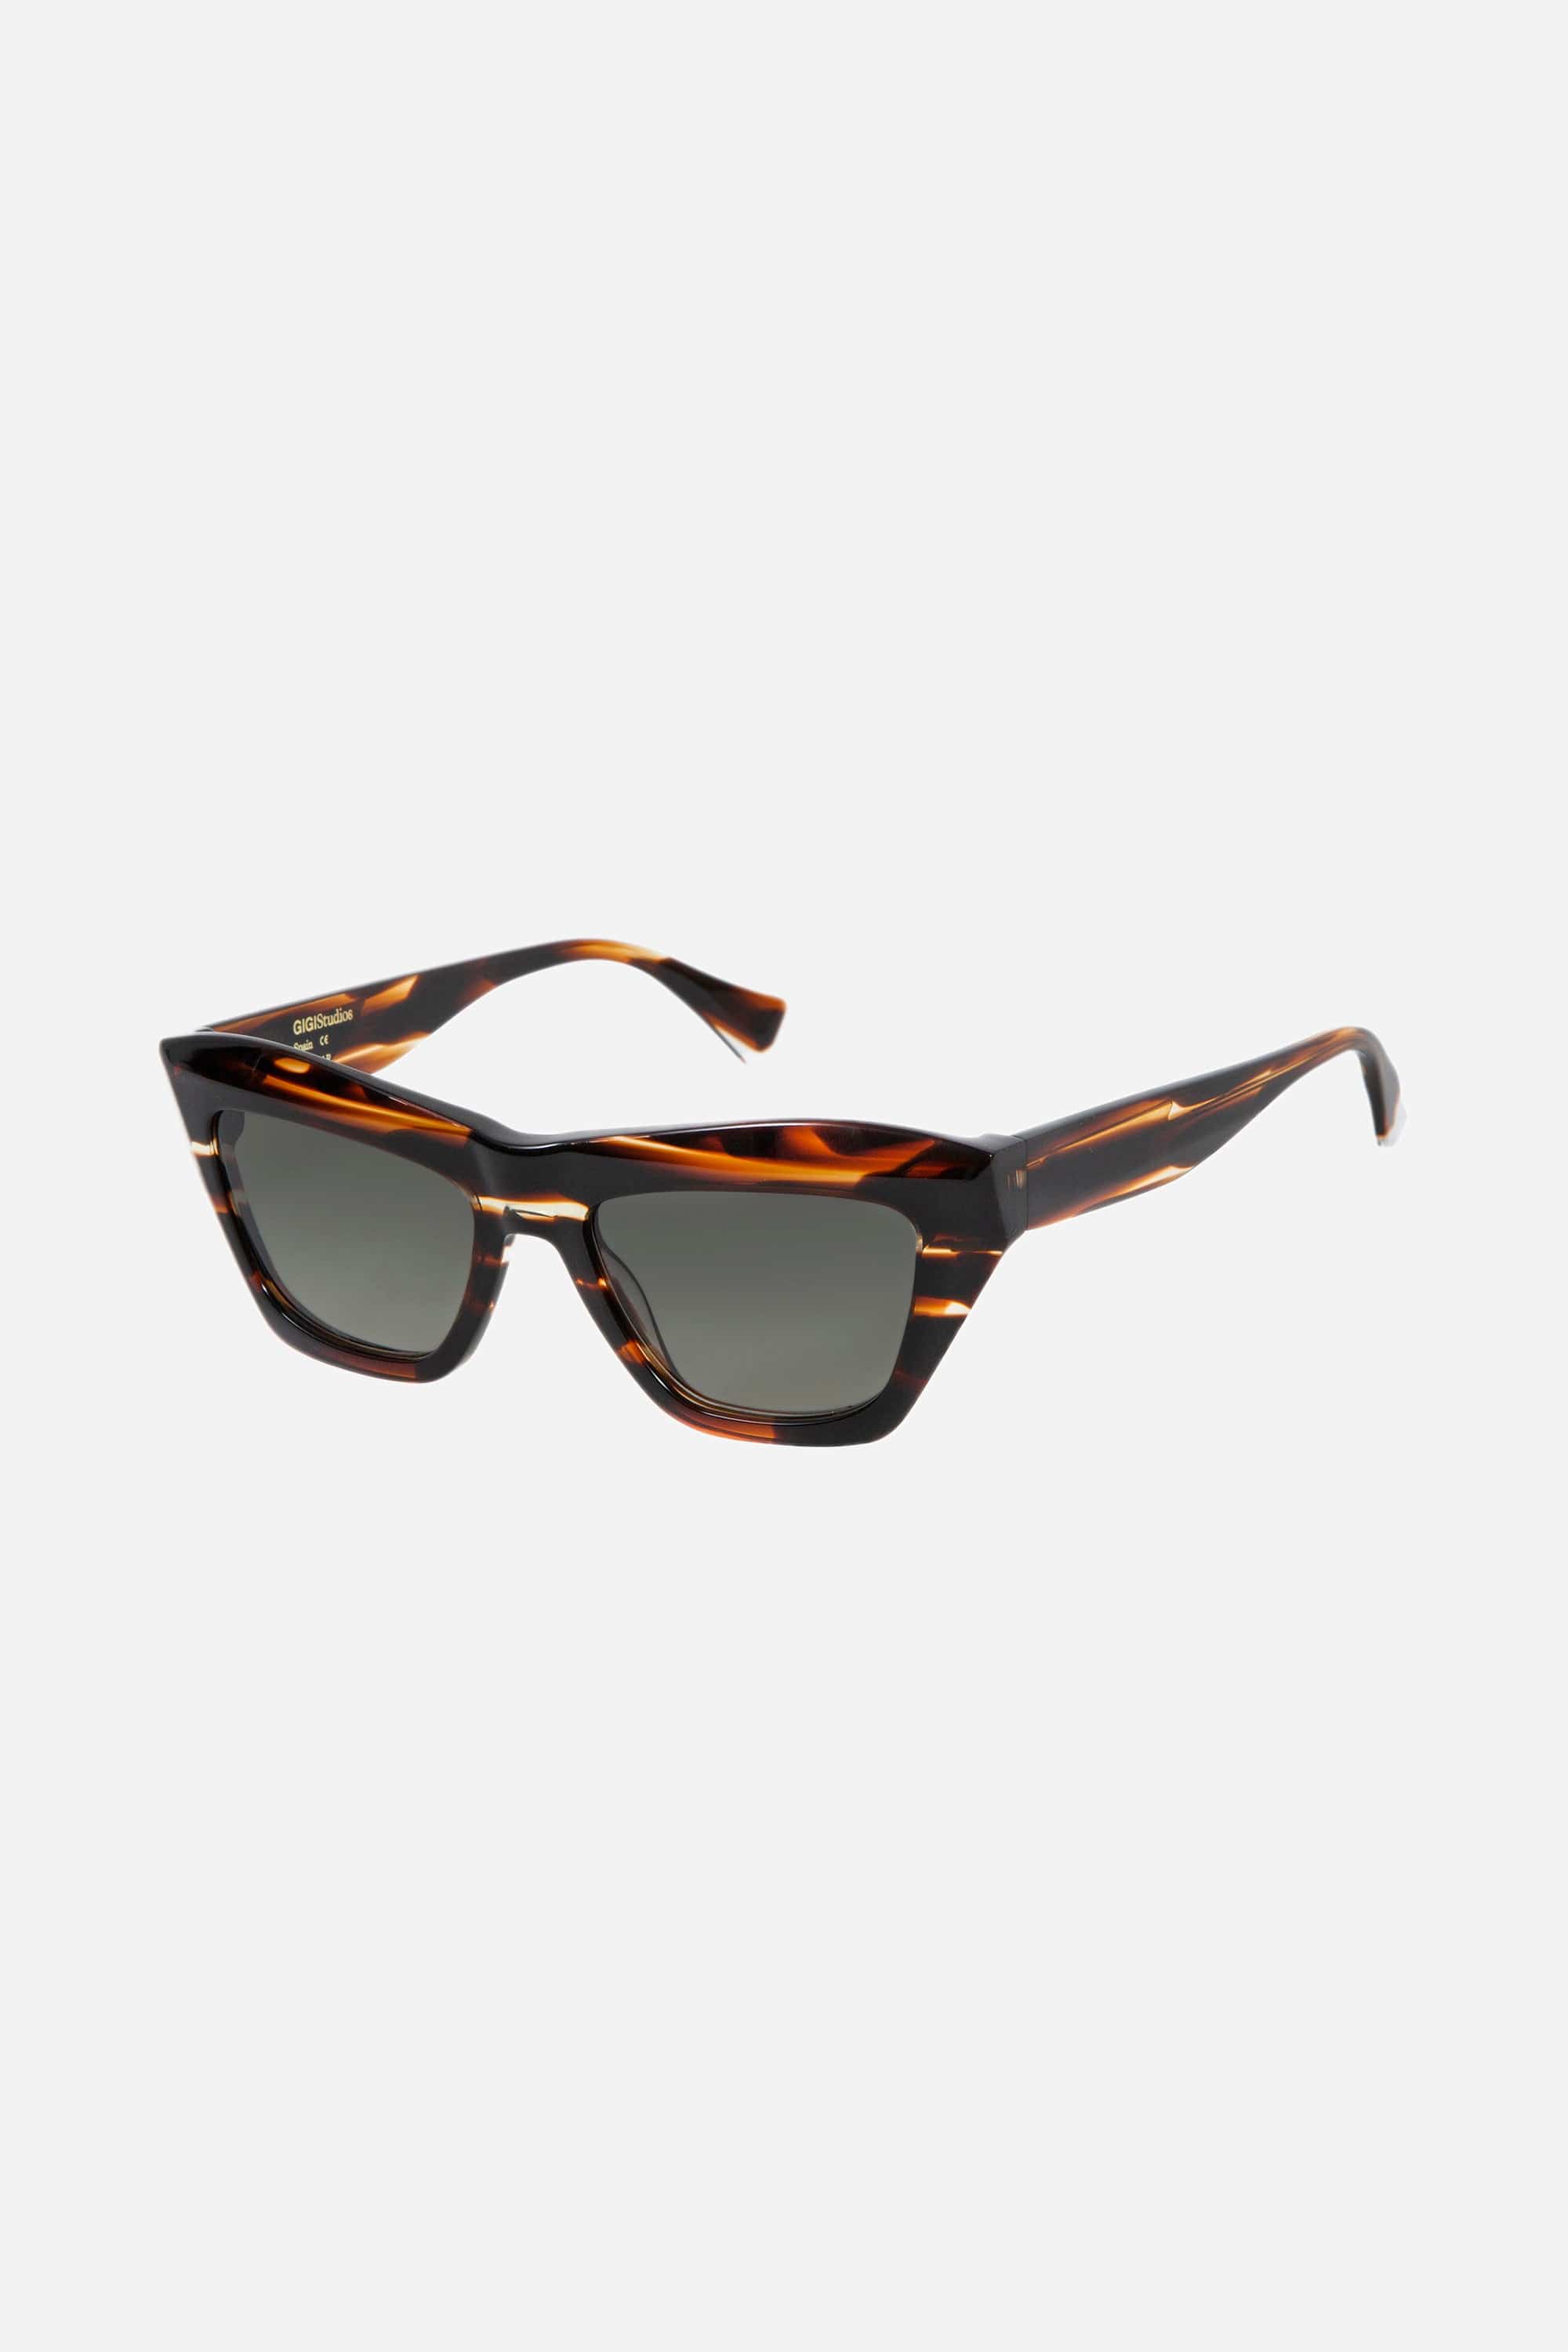 Gigi Studios cat-eye brown bold sunglasses - Eyewear Club